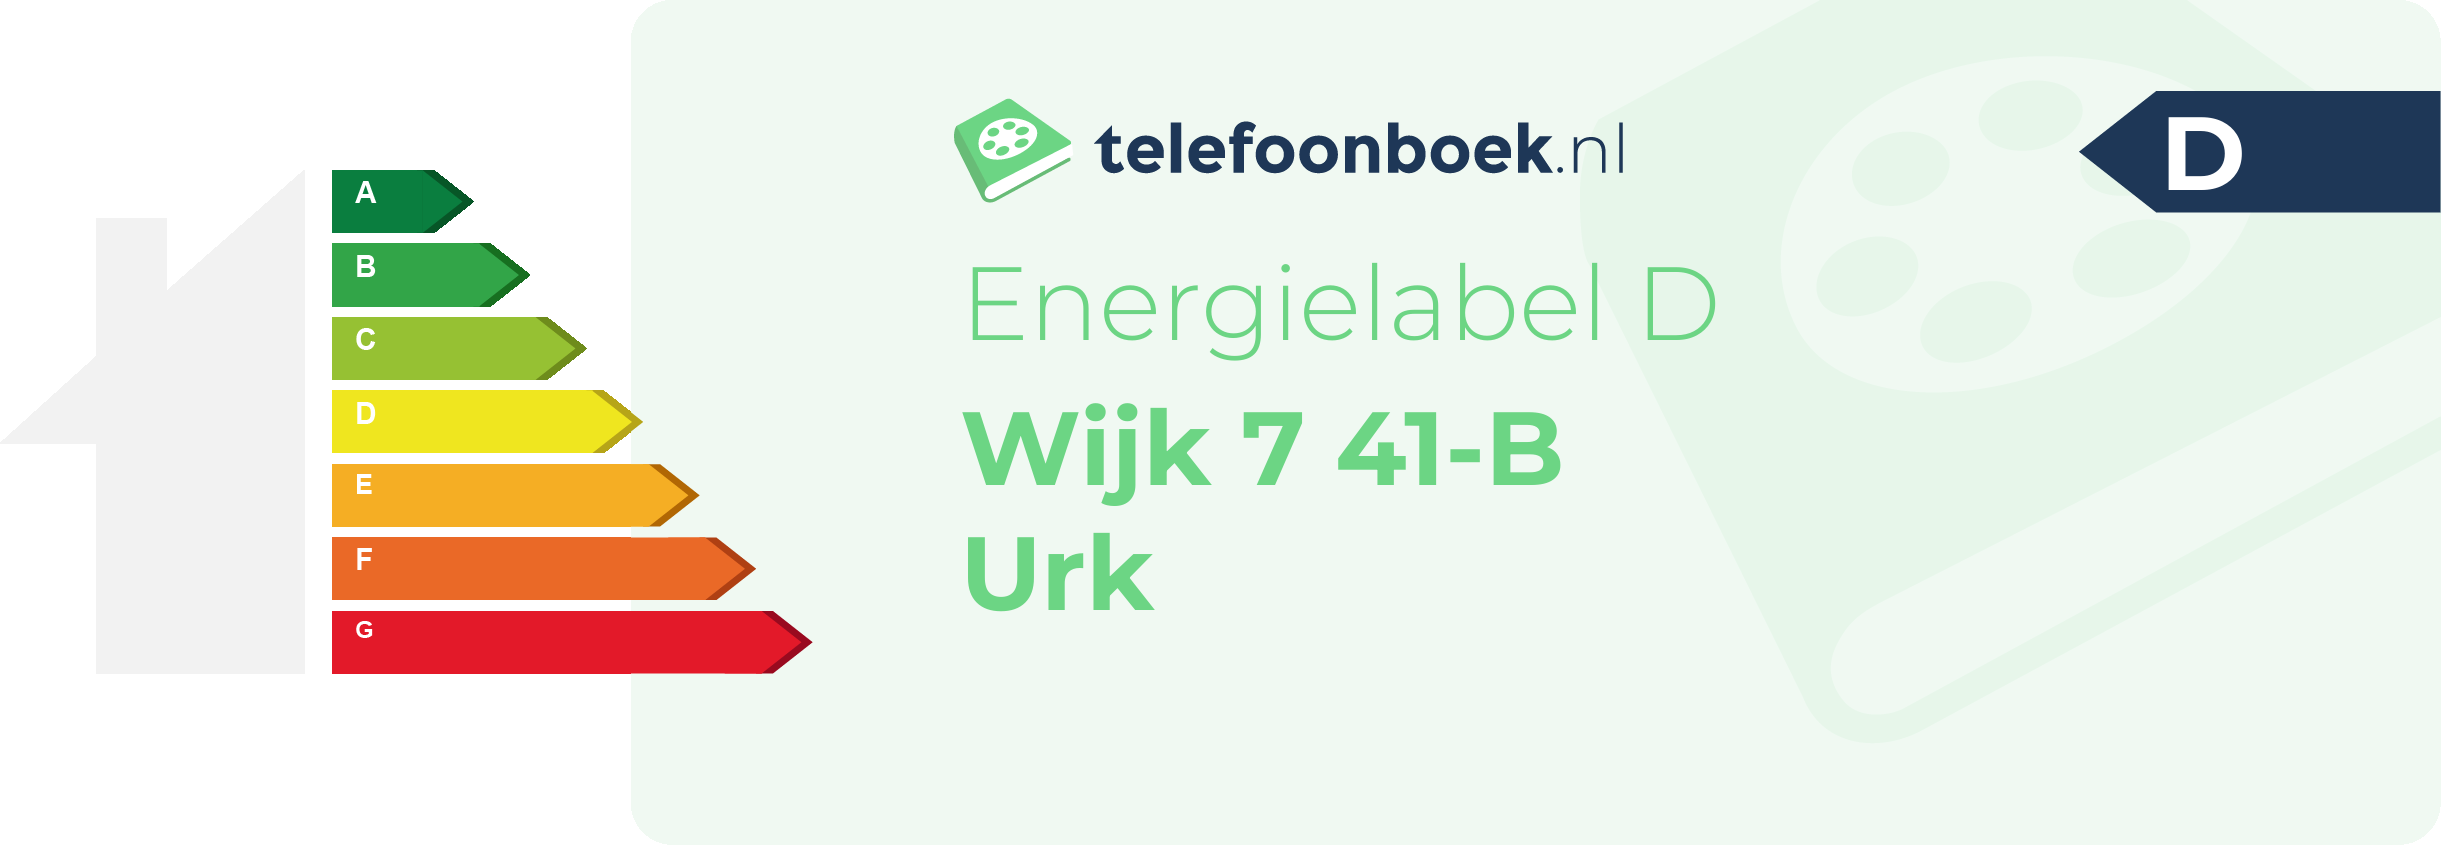 Energielabel Wijk 7 41-B Urk